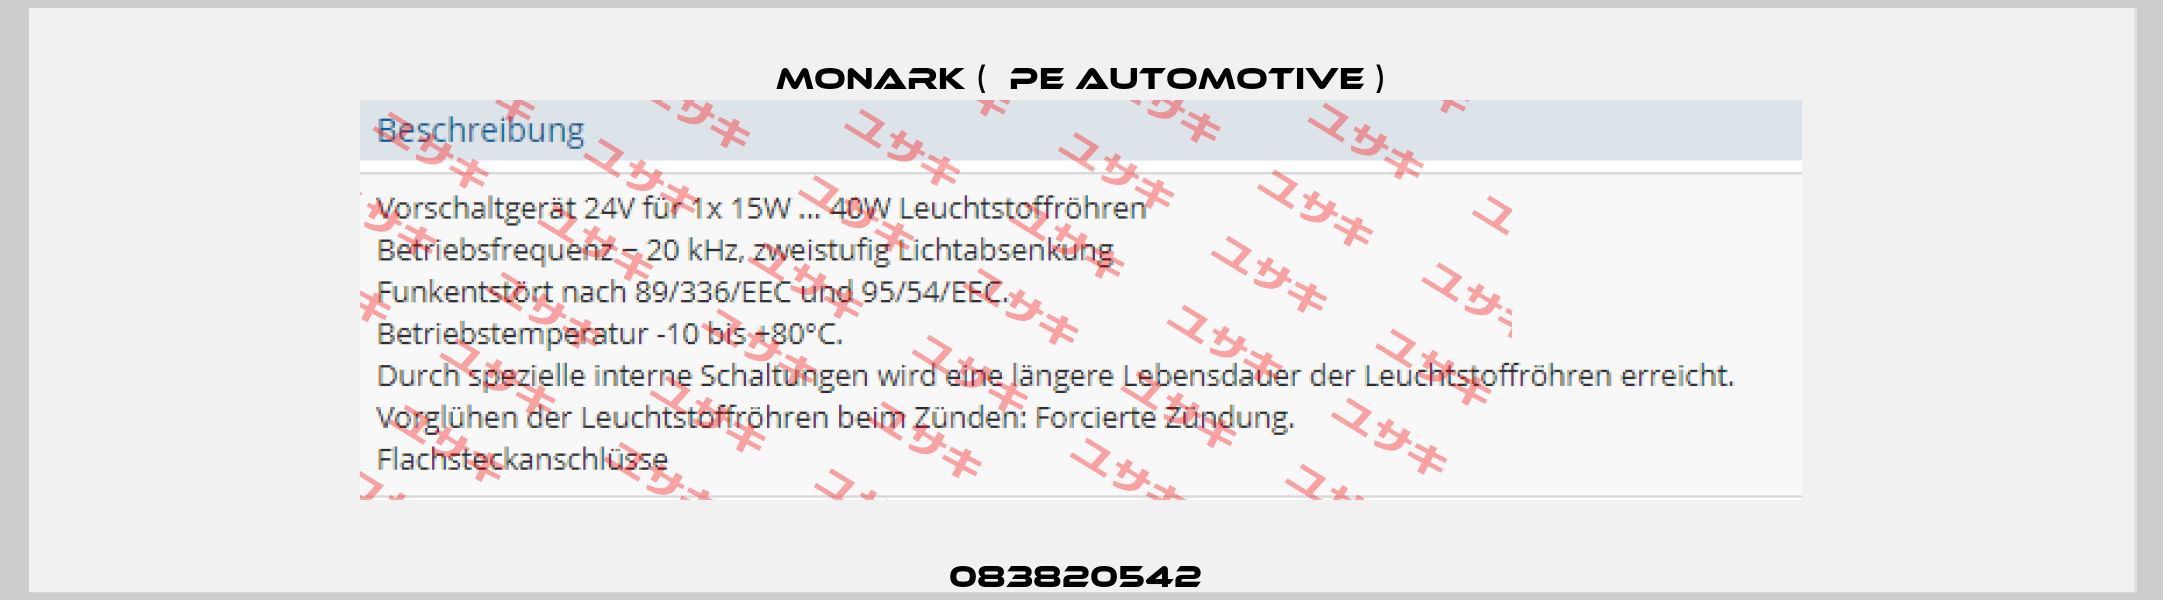 083820542  Monark (  PE Automotive )